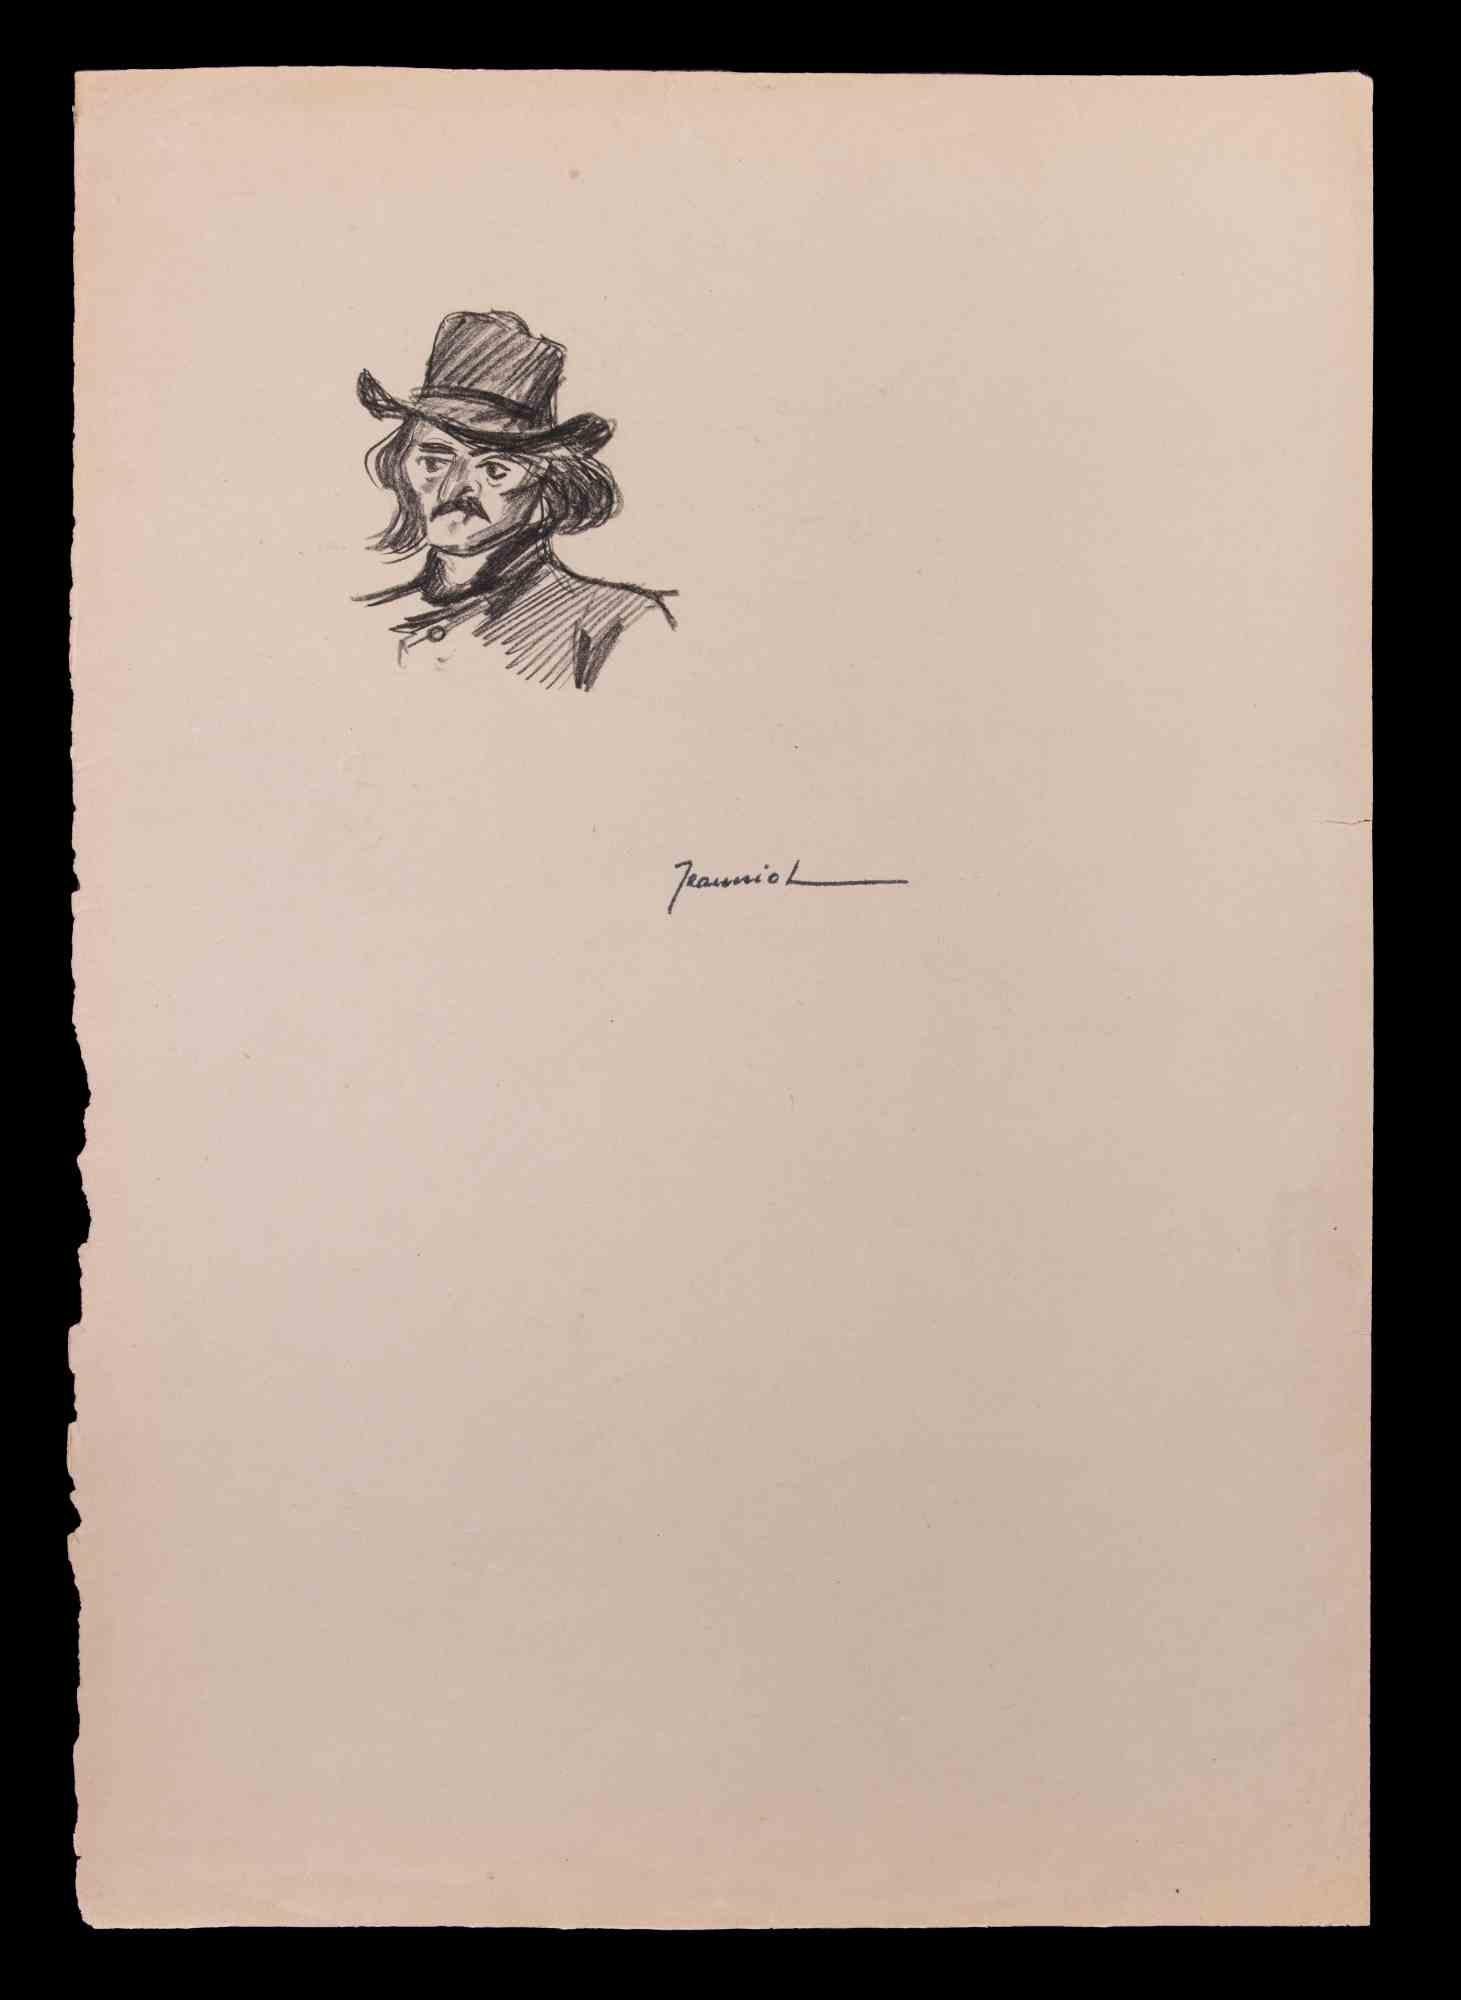 Das Porträt ist eine Original-Zeichnung auf Papier des Malers Pierre Georges Jeanniot (1848-1934).

Zeichnen mit Bleistift.

Handsigniert.

Gute Bedingungen.

Pierre-Georges Jeanniot (1848-1934) war ein schweizerisch-französischer